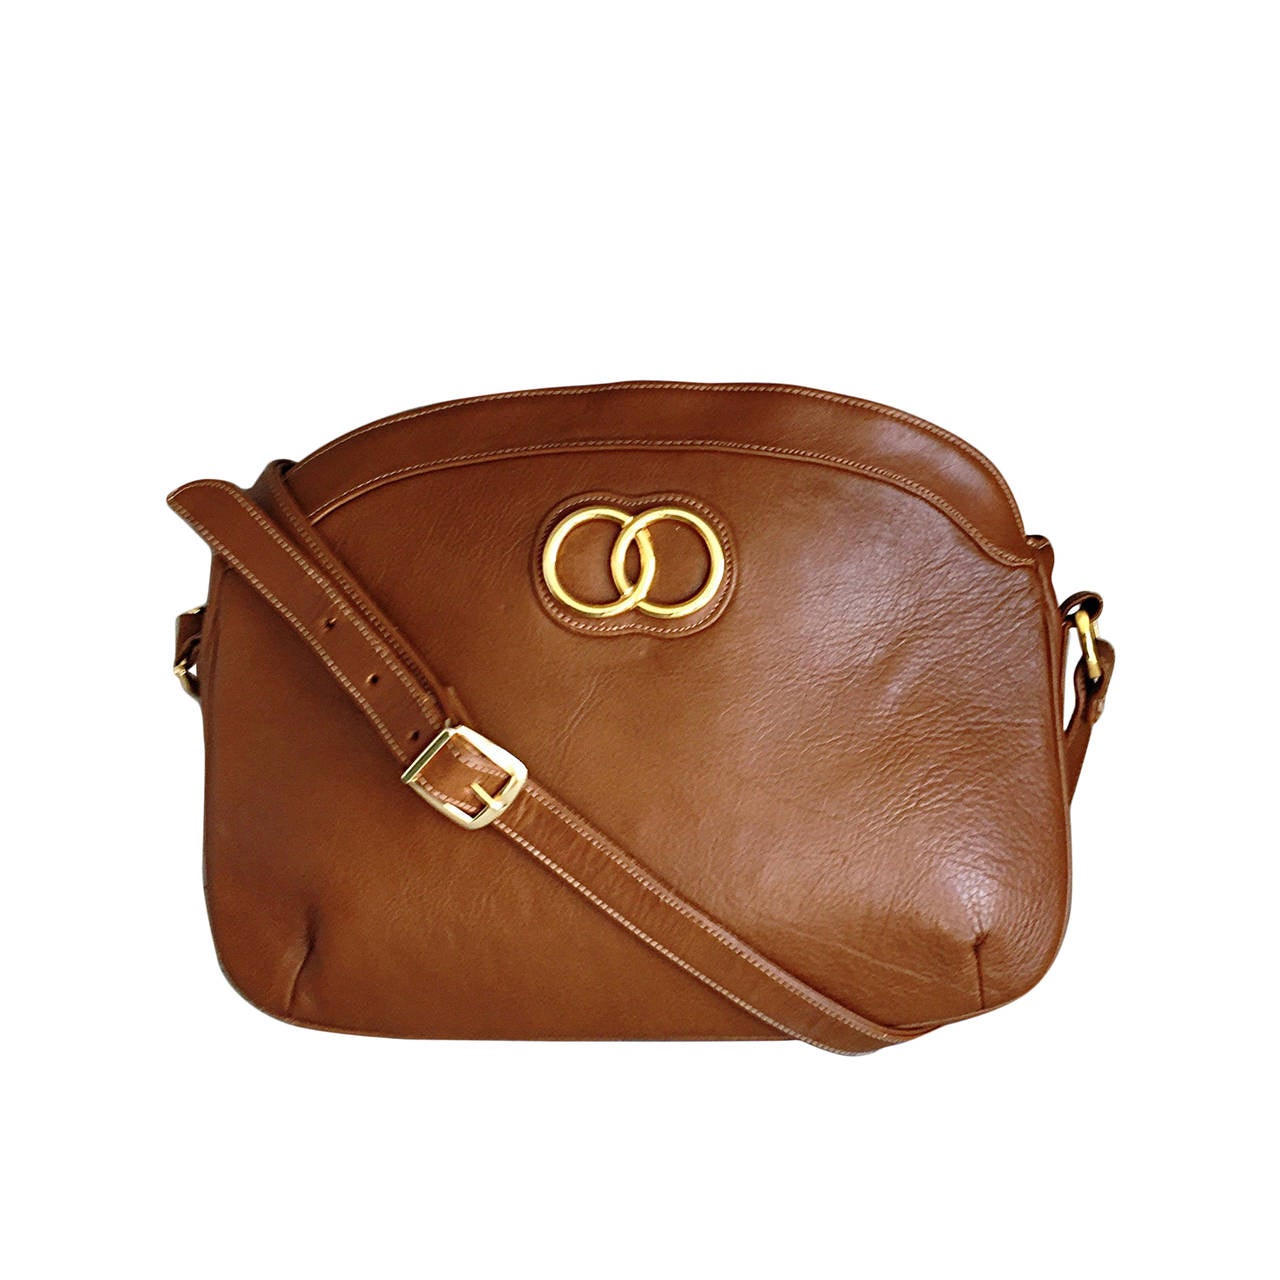 Perfect Brand New Vintage Saks Fifth Avenue Saddle Tan Handbag Purse Bag For Sale at 1stdibs